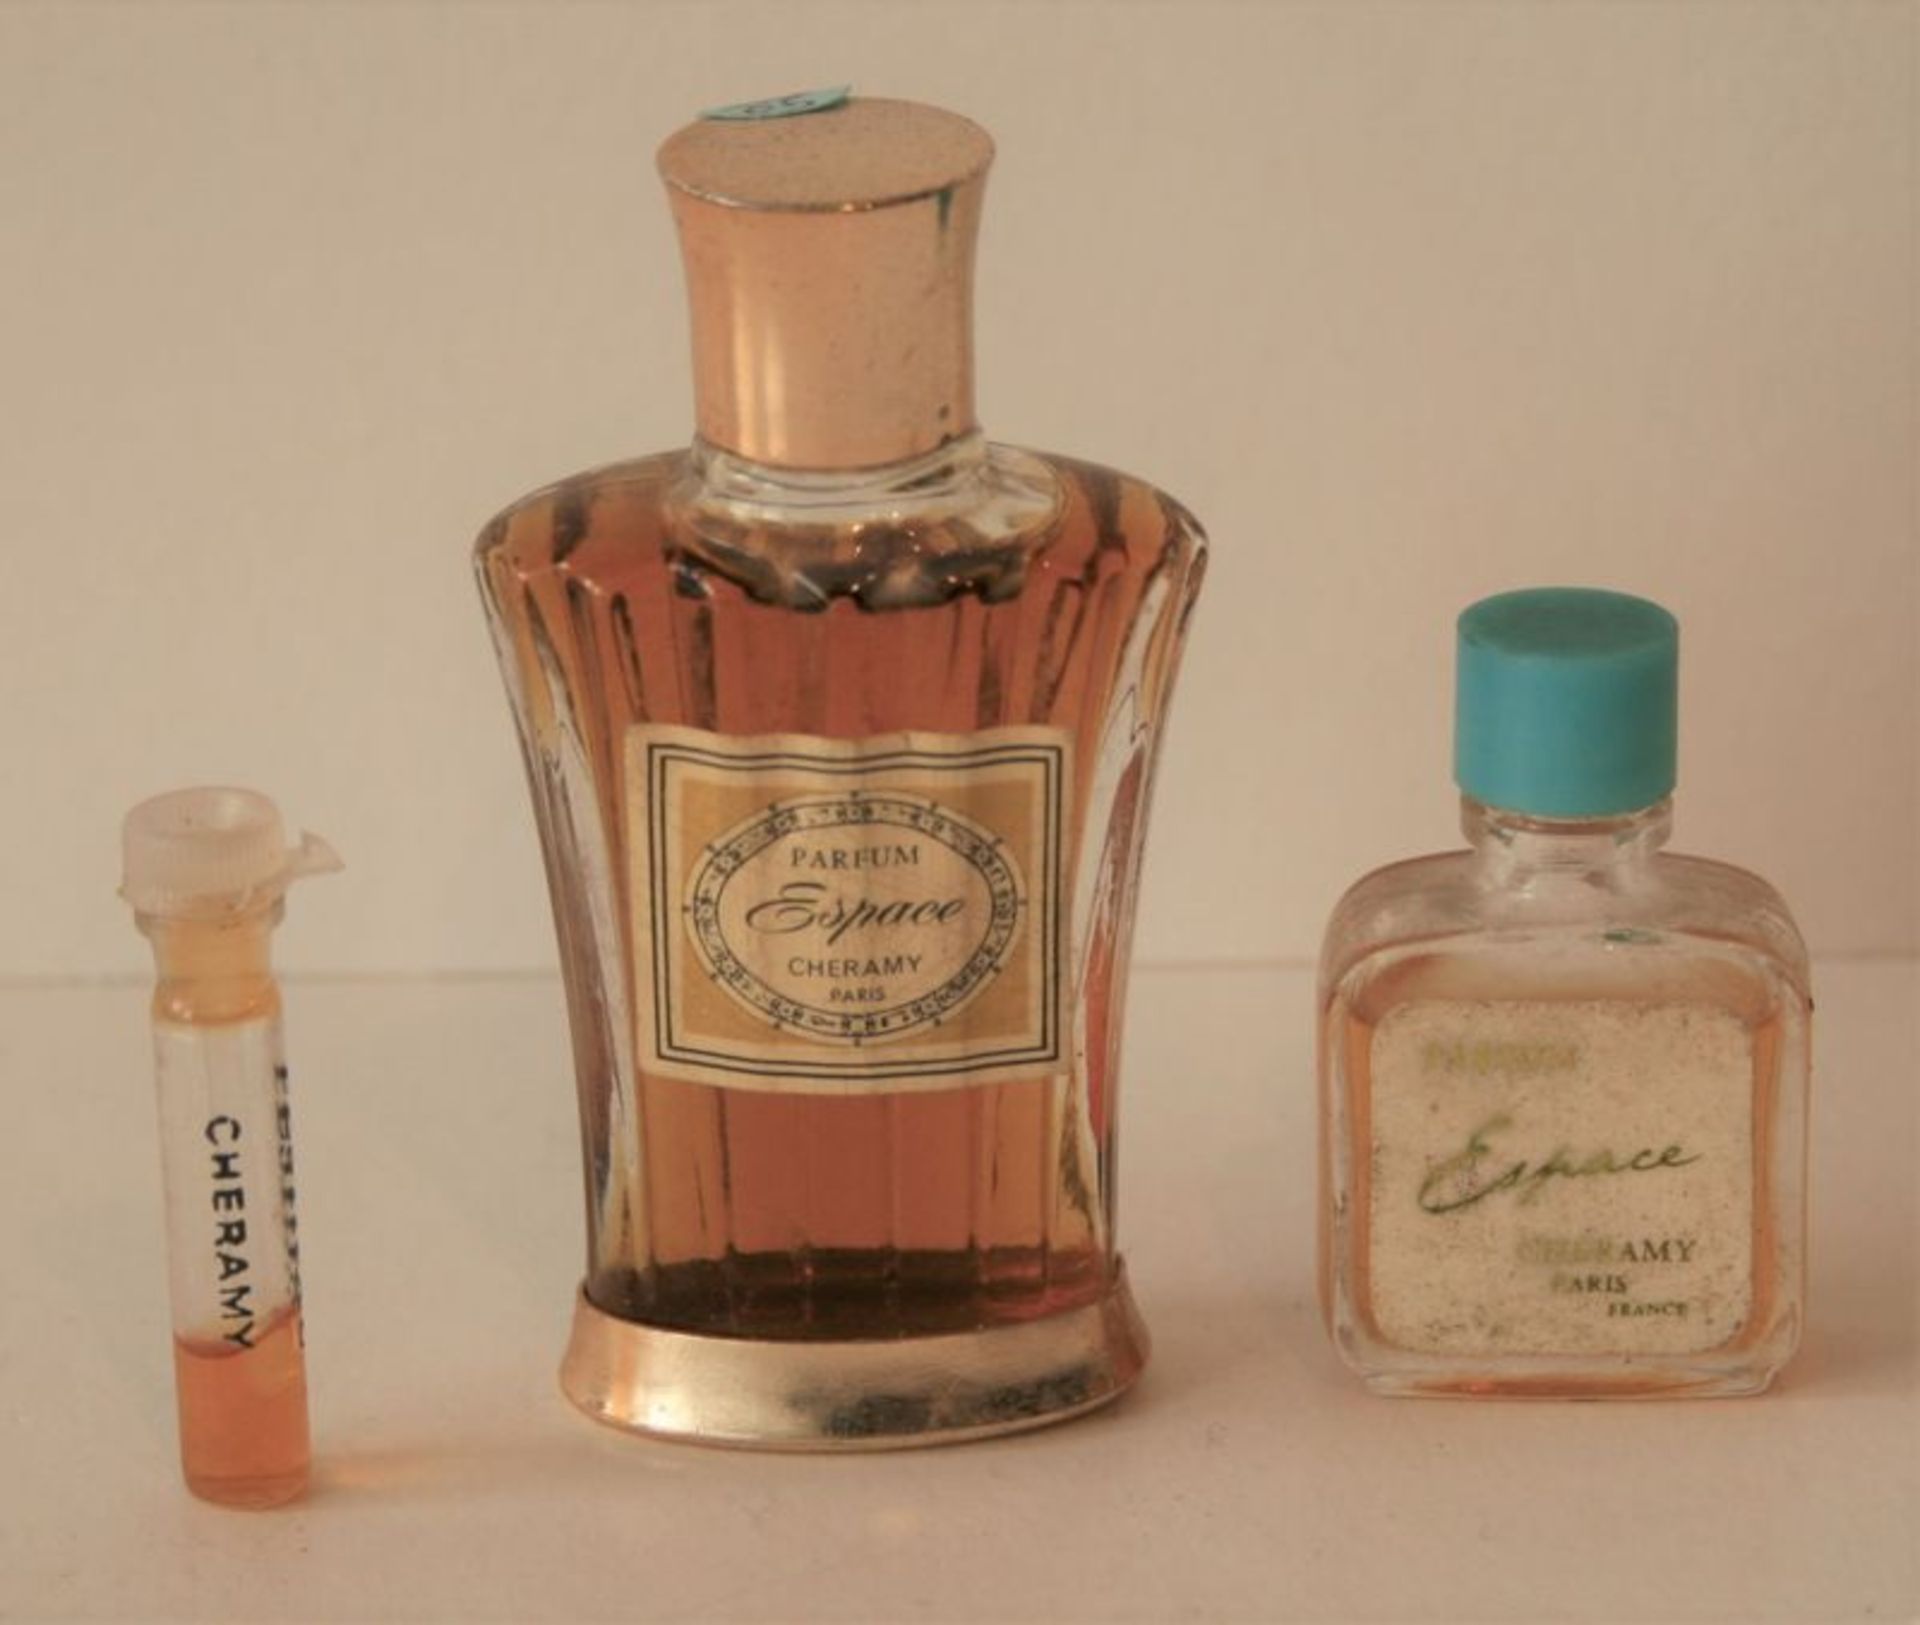 Flacon de parfum encore scellé de CHERAMY "Espace", flacon design couleur or - Joint [...]